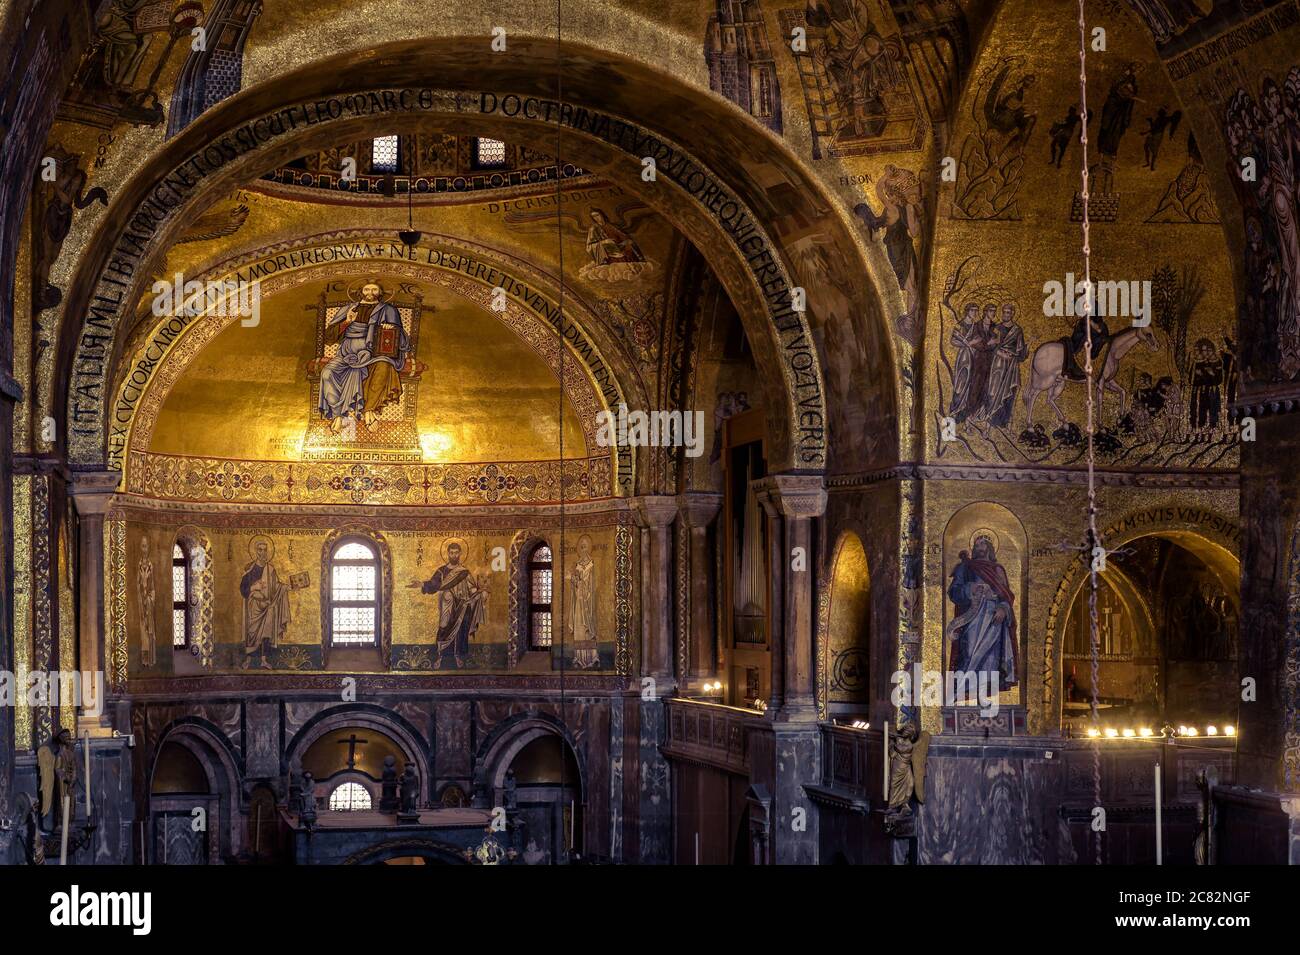 Venedig, Italien - 21. Mai 2017: Goldenes Wandmosaik im Inneren des Markusdom oder Markusbasilika,`s ist ein großes altes Wahrzeichen von Venedig. Interieur des berühmten St Mar Stockfoto